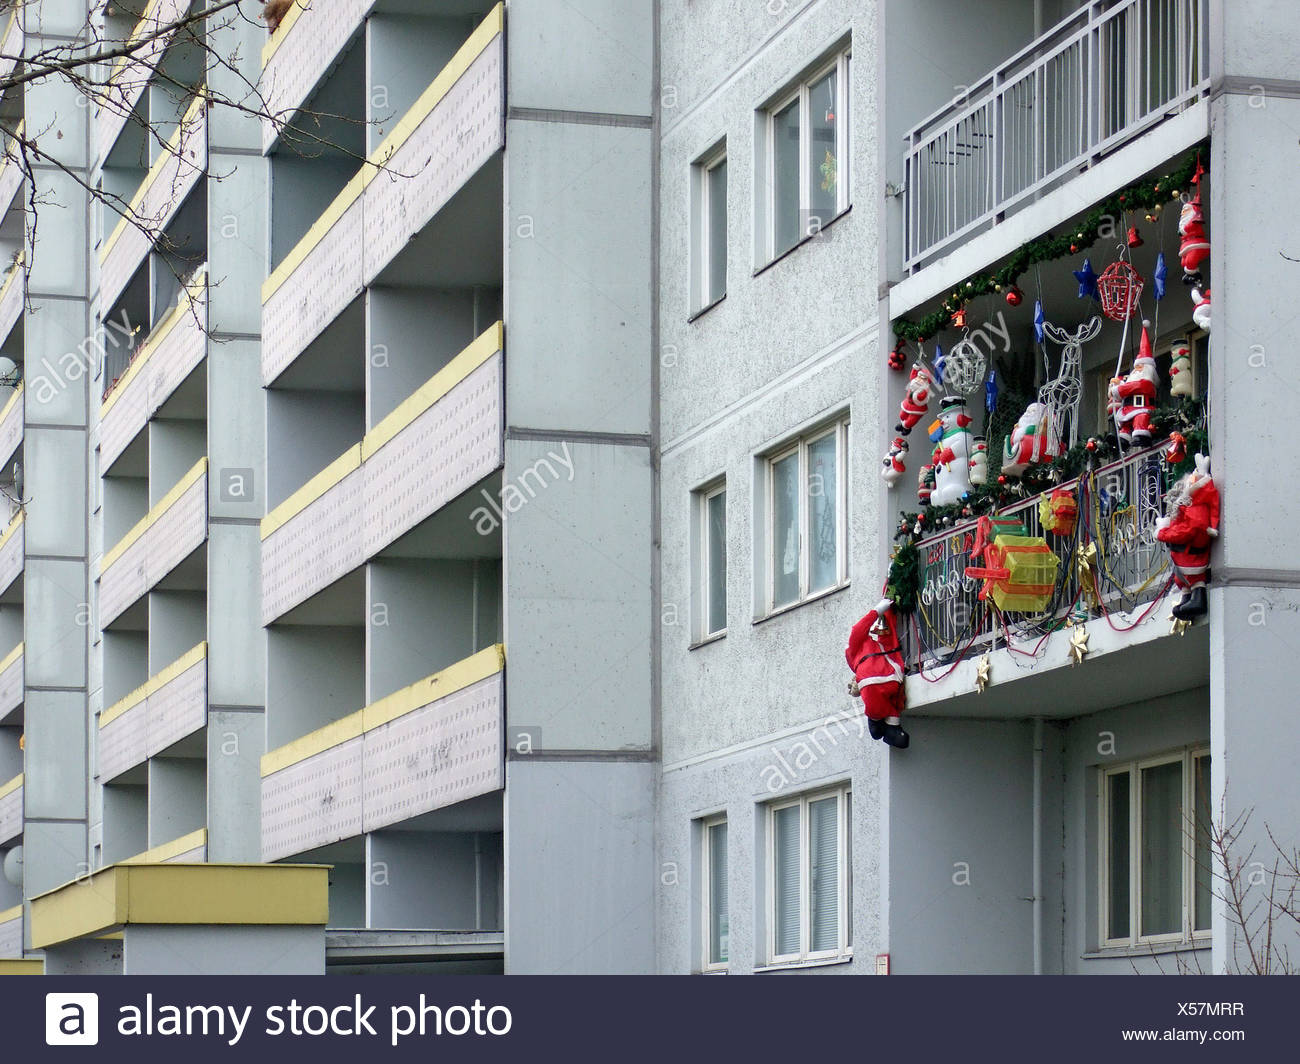 Addobbi Natalizi Balconi.Berlino Decorazione Di Natale Su Un Balcone Foto Stock Alamy